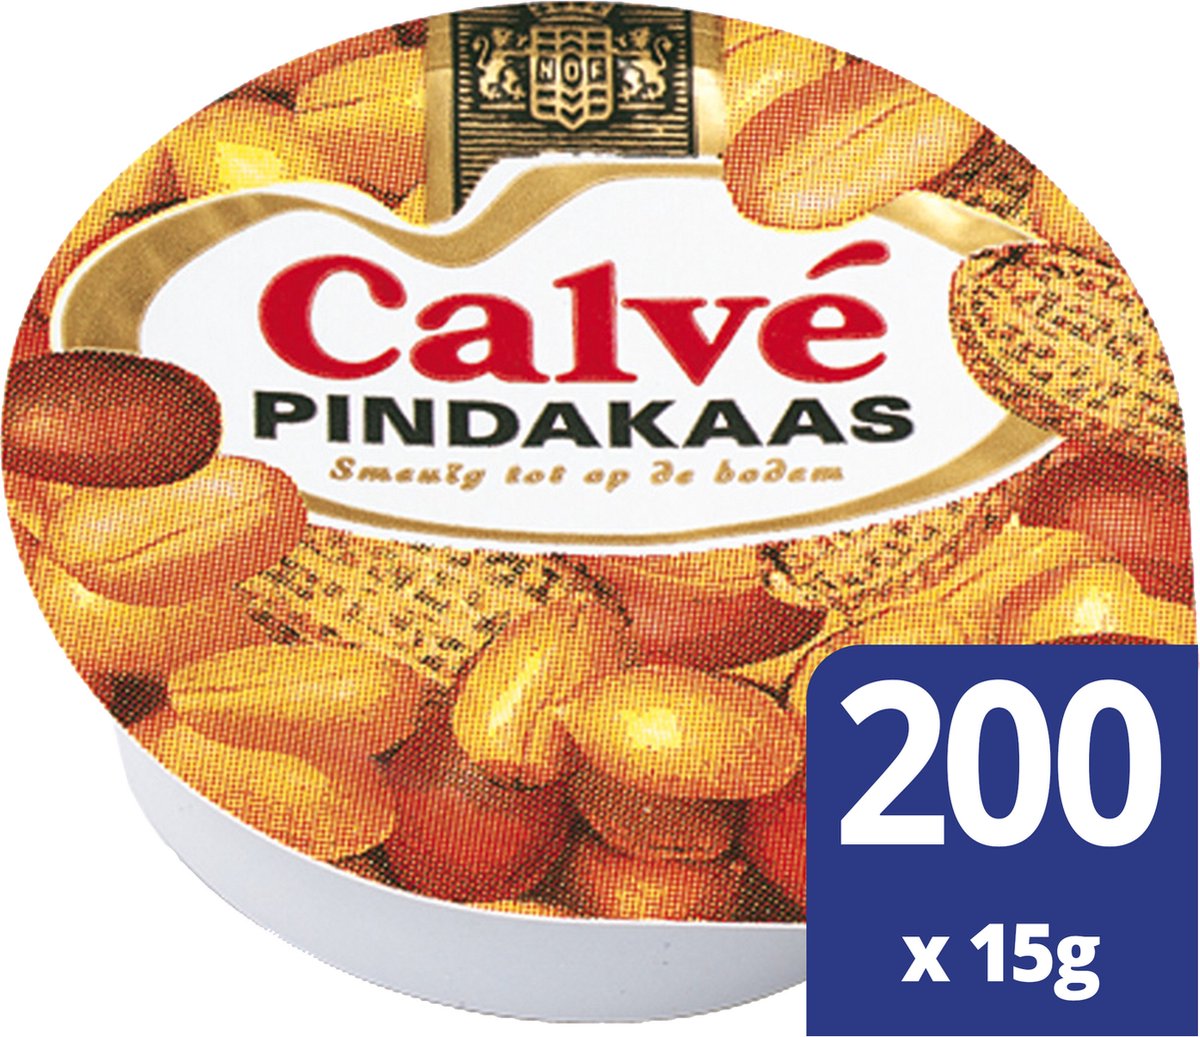 Calve - Broodbeleg - Pindakaas Cups / Peanut Butter - 200 x 15 gram - Calvé